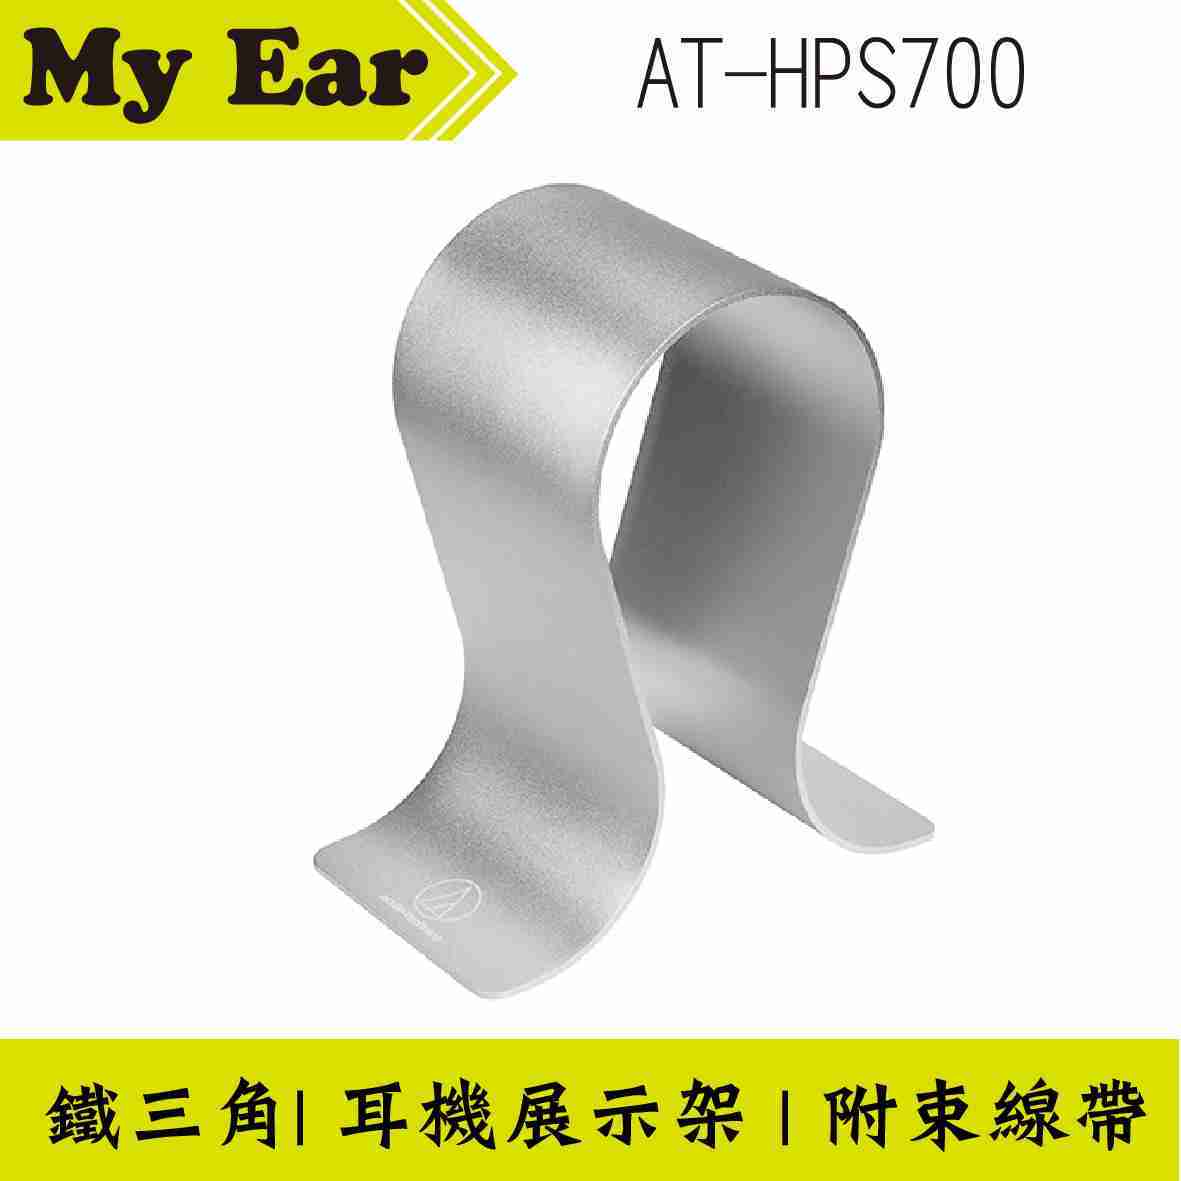 鐵三角 AT-HPS700 耳機展示架 附束線帶 | My Ear耳機專門店